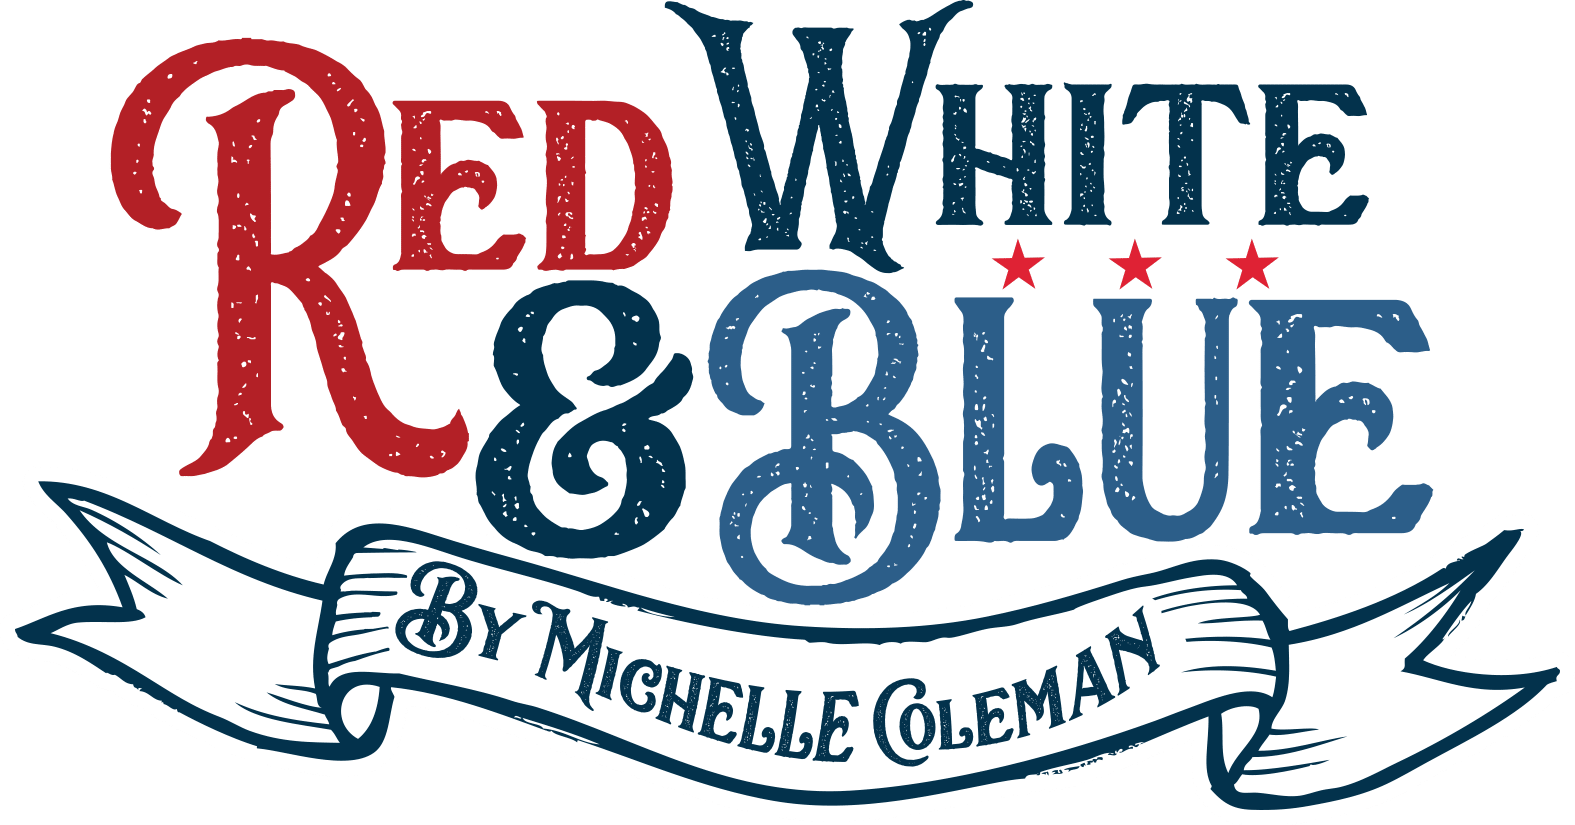 Red white blue. White Blue Red. White Red Blue emblema. Red, White, or Blue. Red White Blue government.